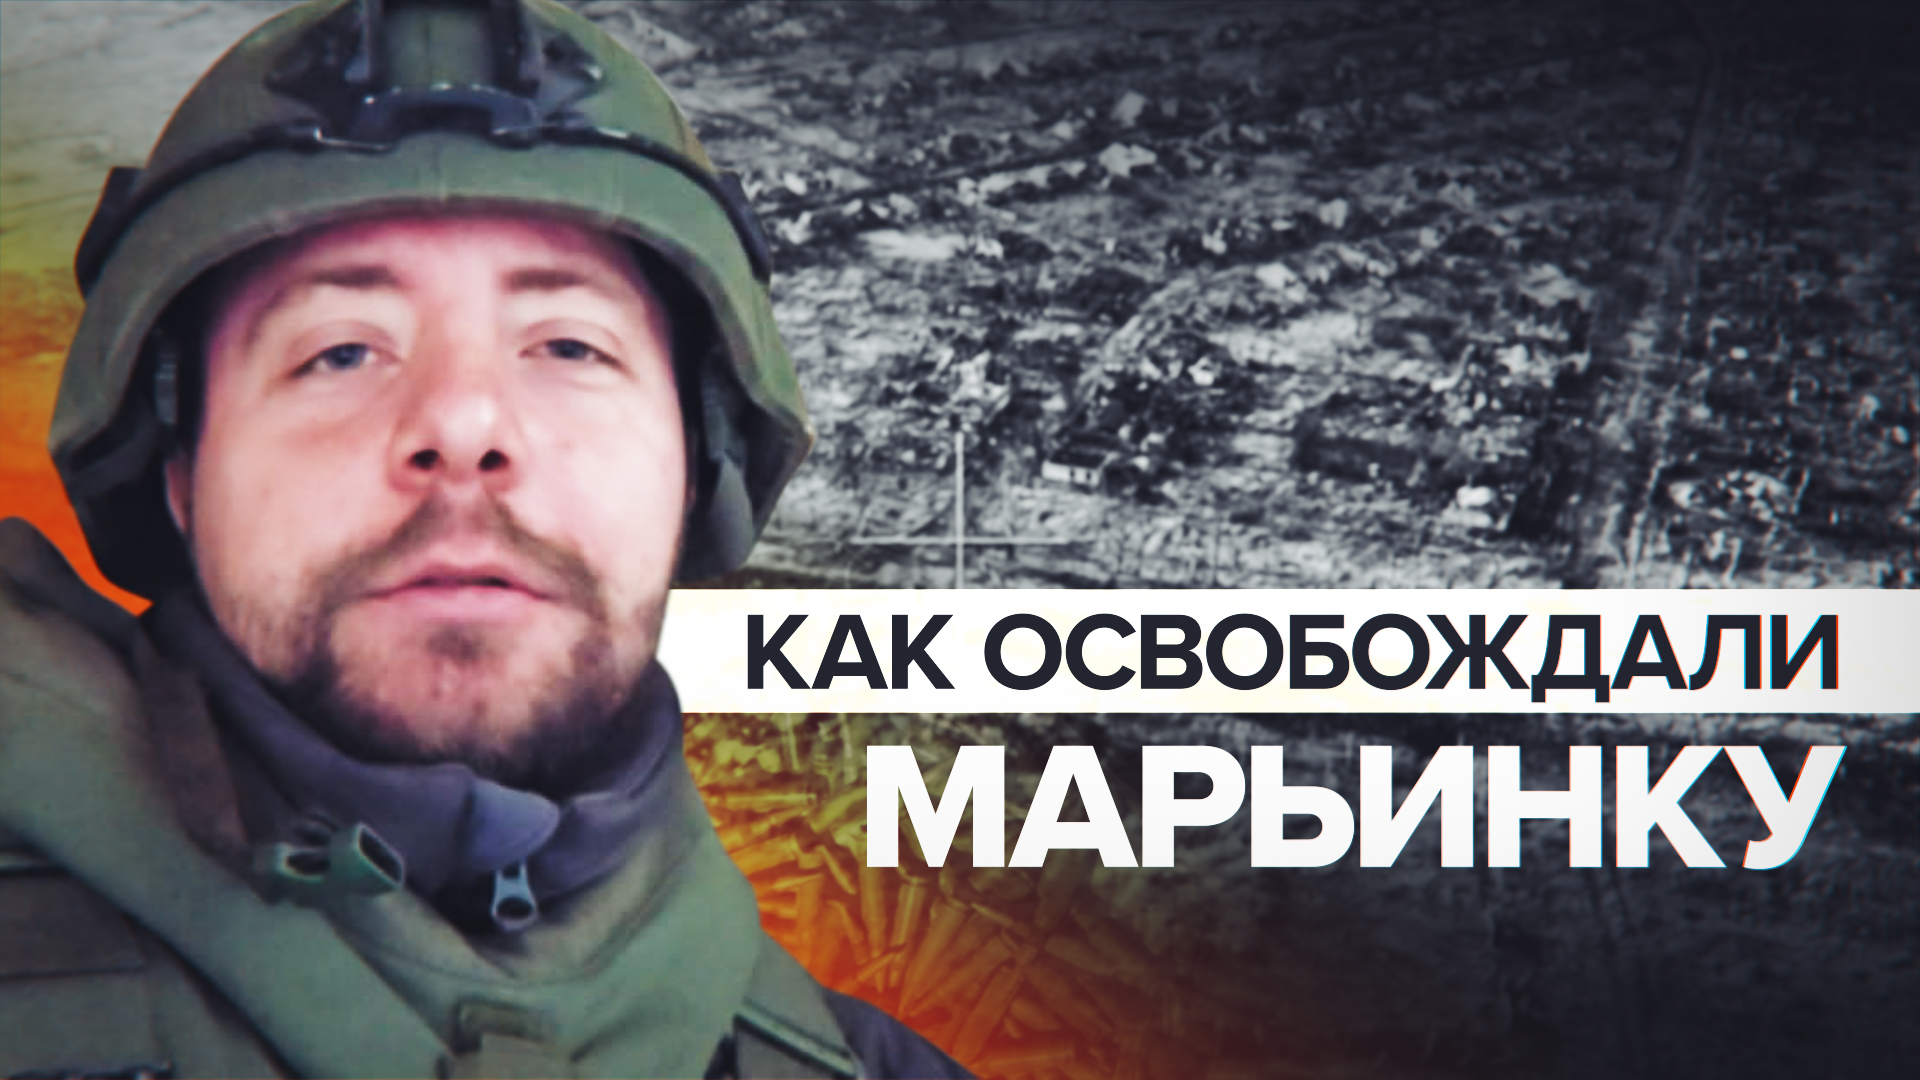 Эксклюзив RT: бойцы 5-й бригады рассказали подробности освобождения Марьинки